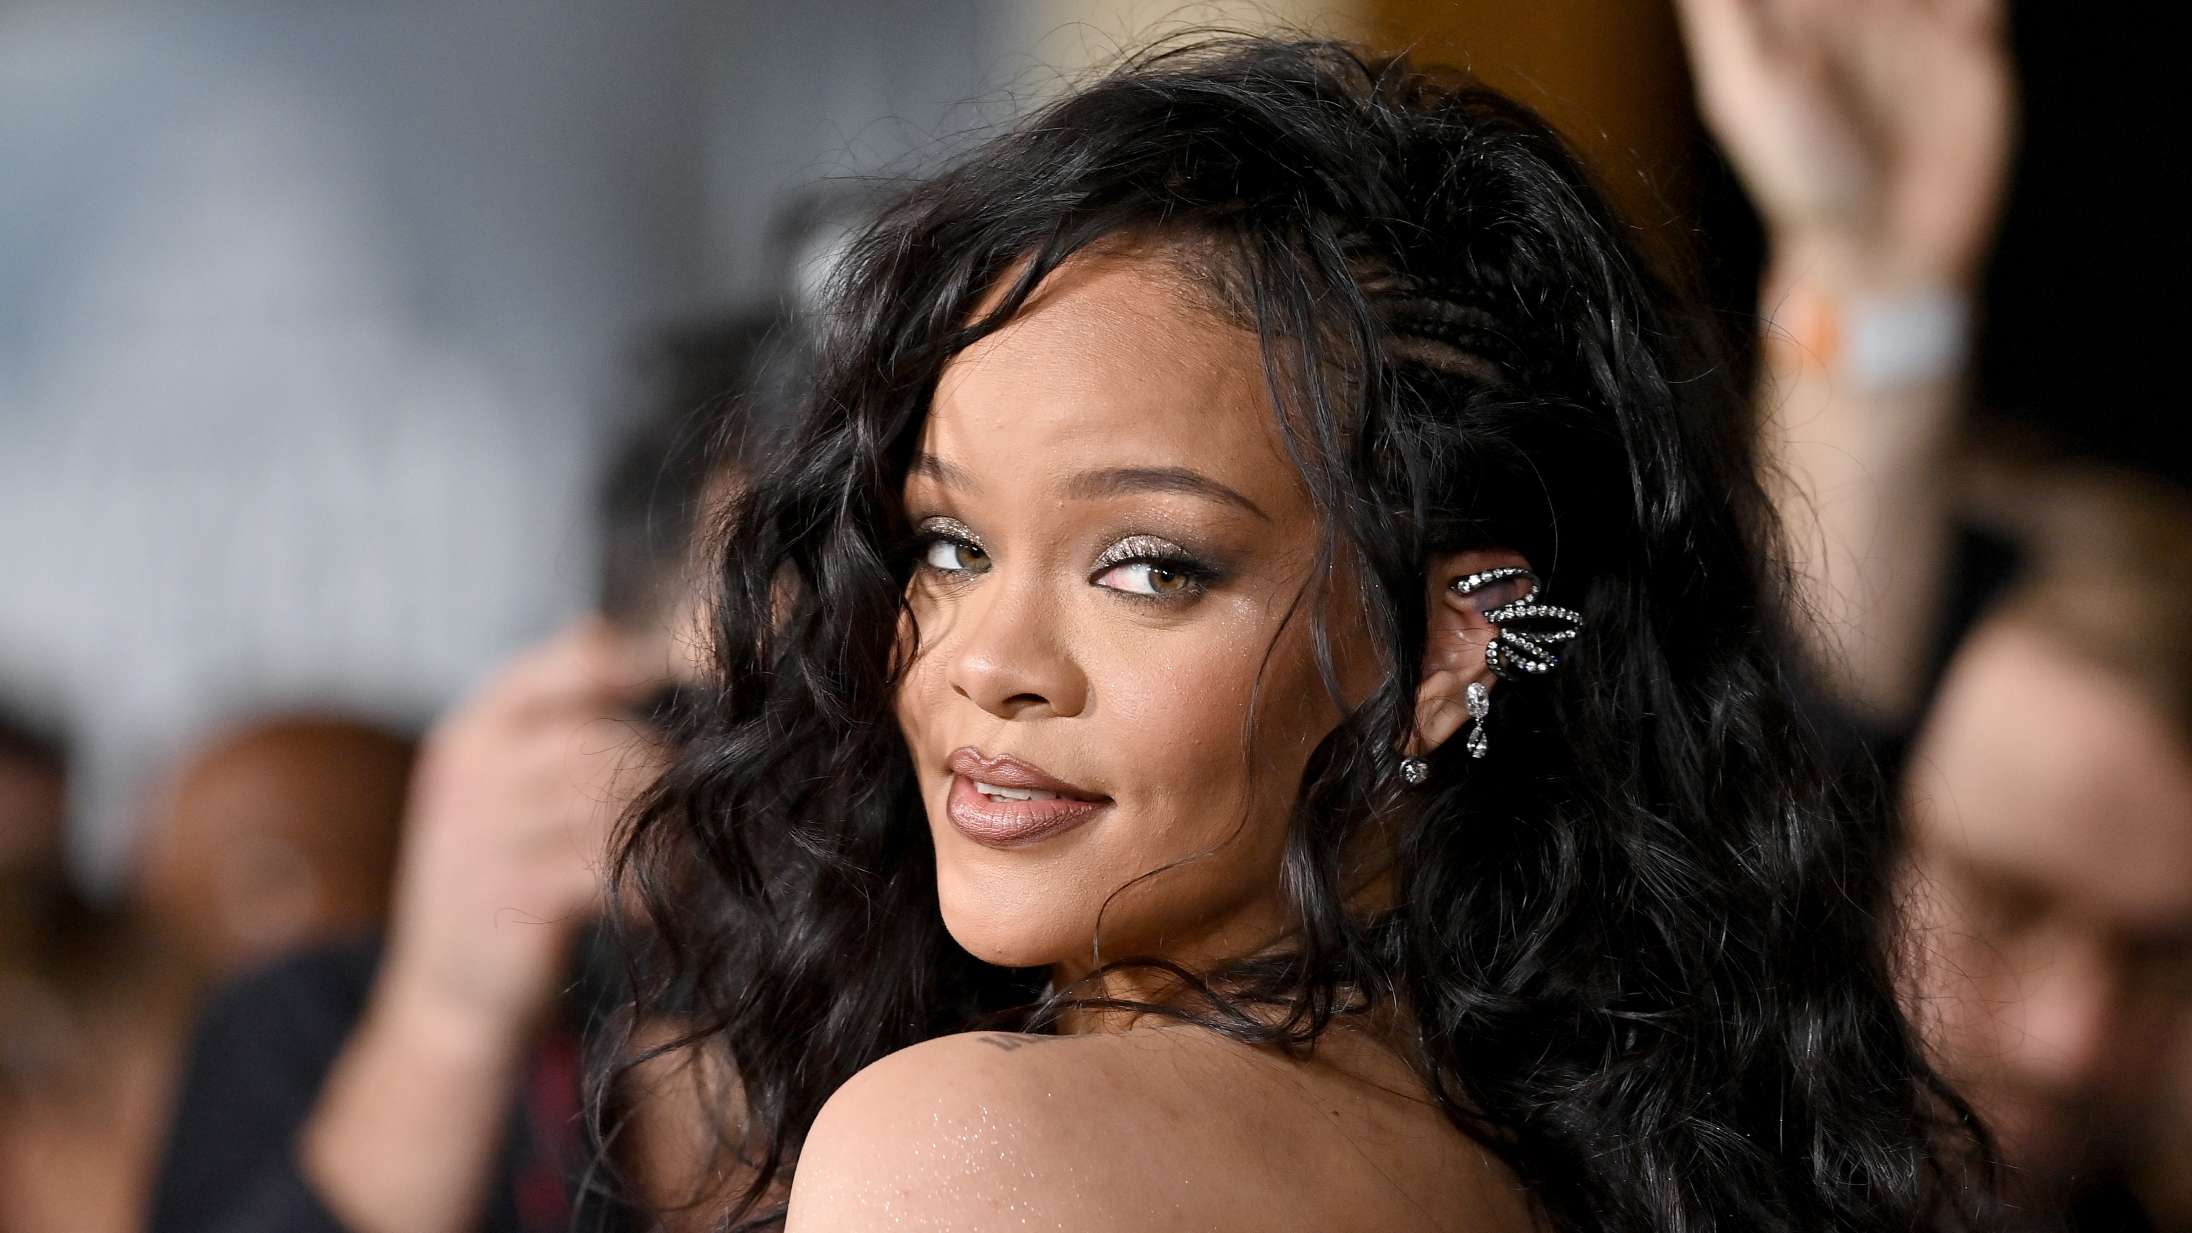 Hvem skulle spille Rihanna i en potentiel biopic? Her er hendes eget bud